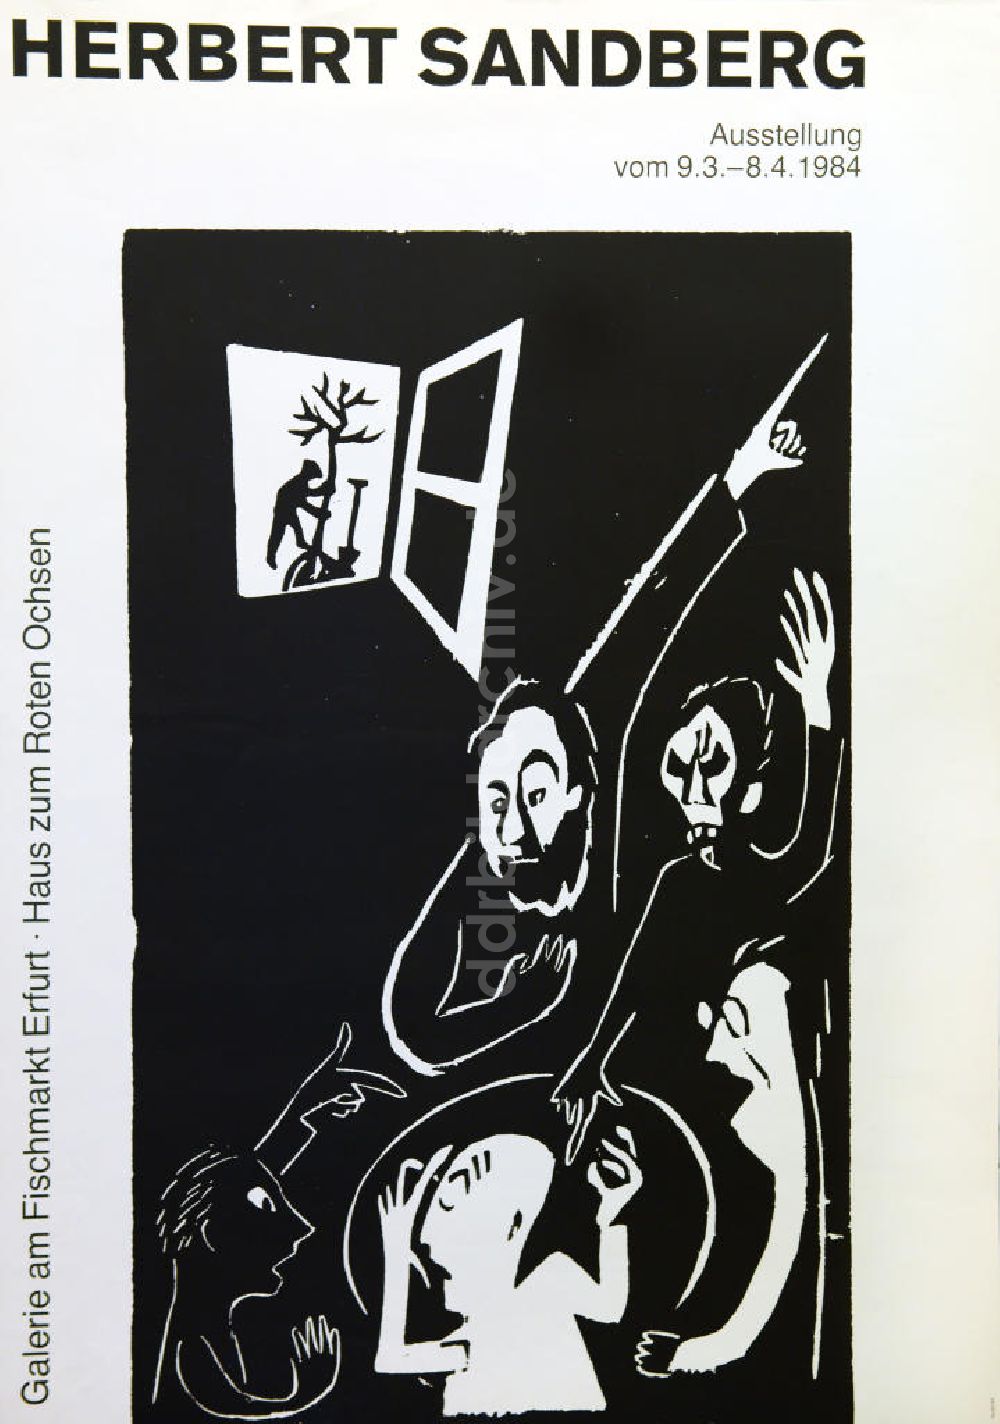 Berlin: Plakat von der Ausstellung Herbert Sandberg aus dem Jahr 1984